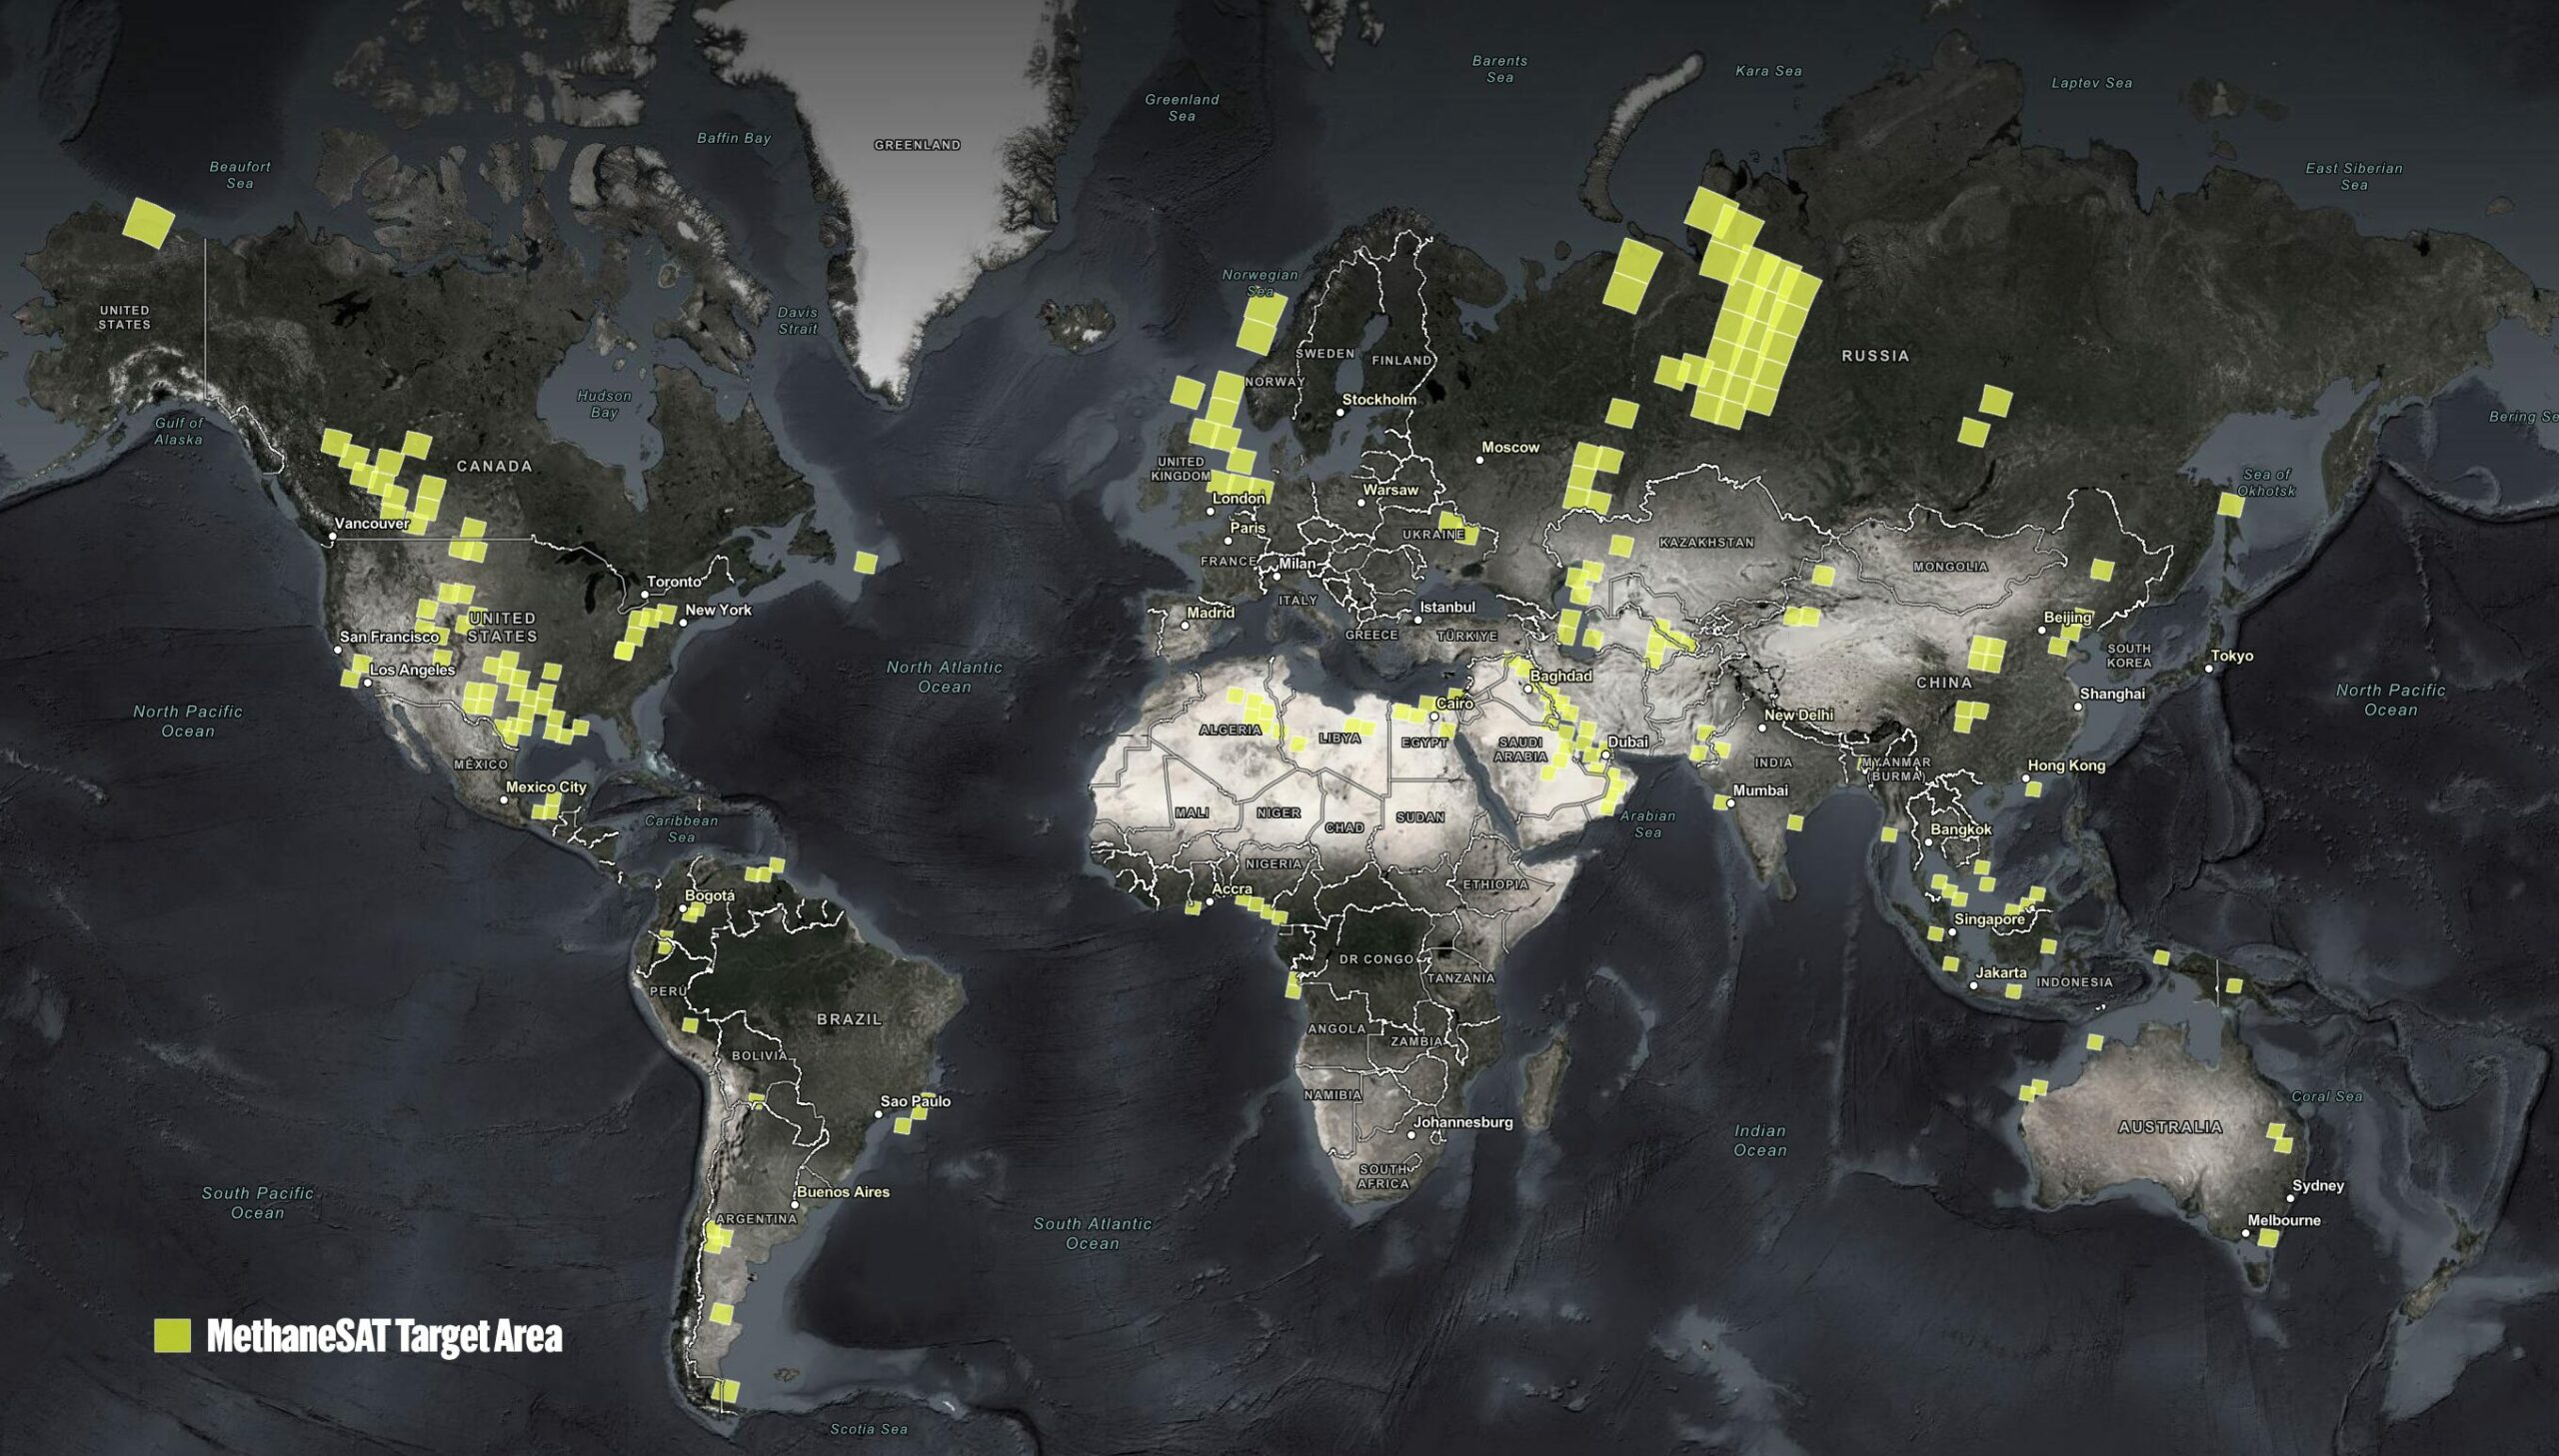 Auf der Karte sind die Zielgebiete des MethaneSAT ersichtlich. © Environmental Defense Fund 